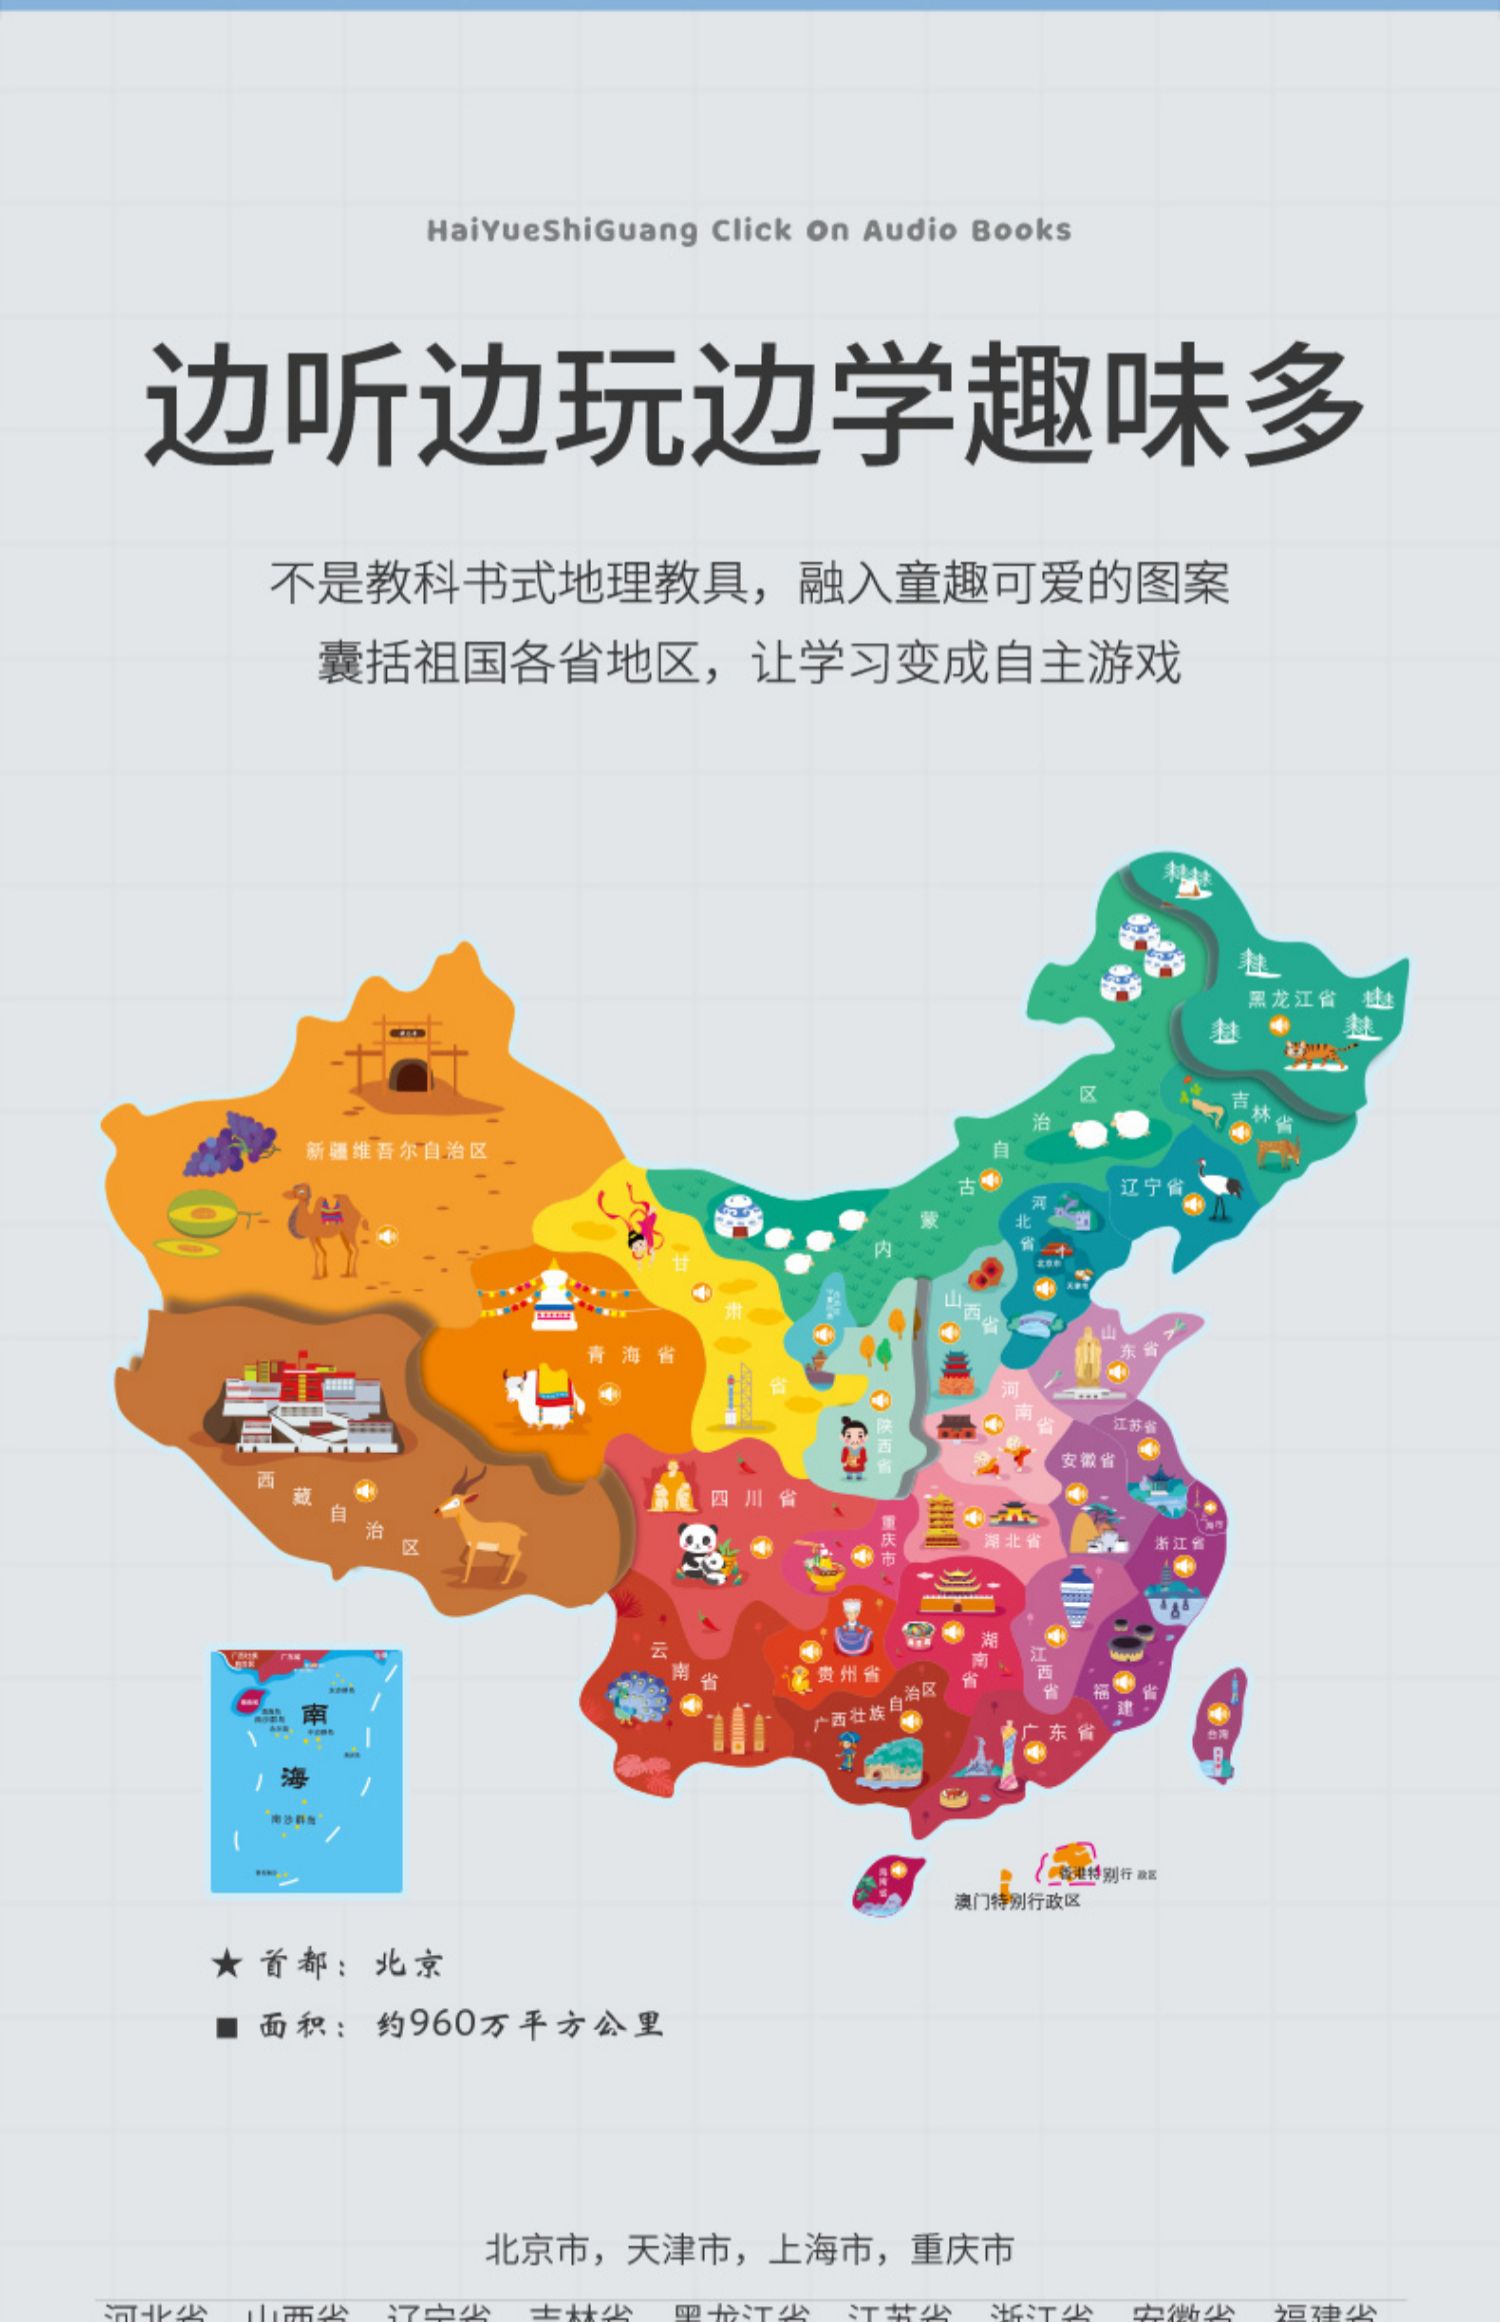 中国地图q版 动漫图片